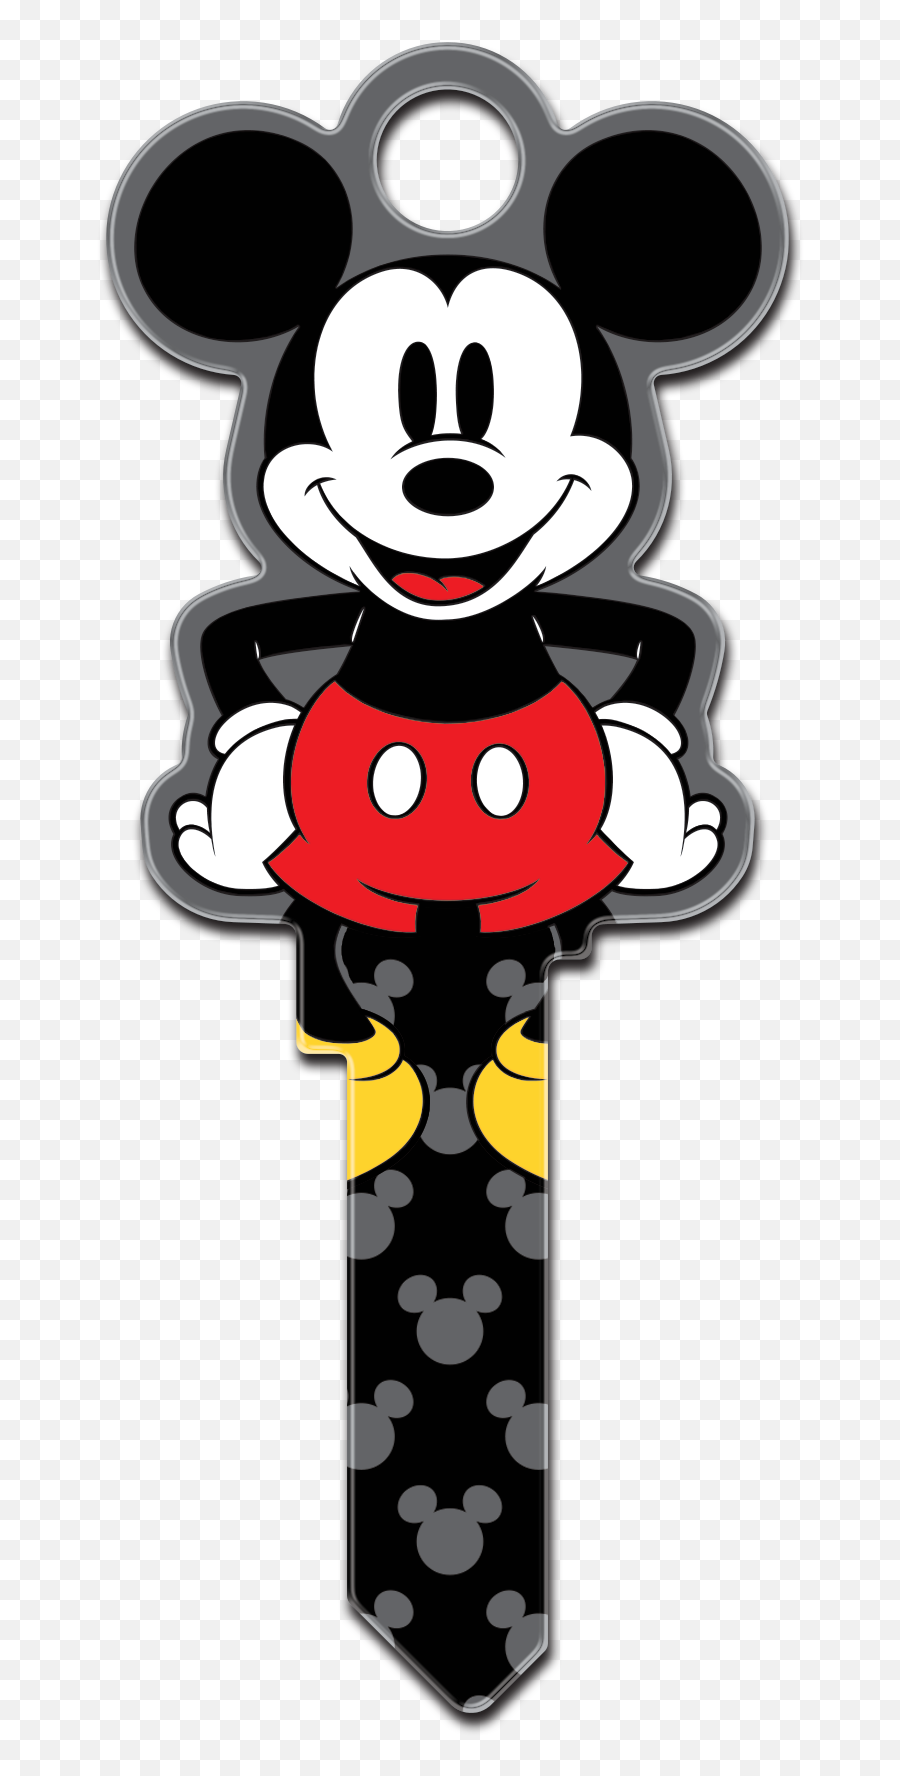 Keys Clipart Mickey - Mickey Mouse Key Transparent Cartoon Mickey Mouse Key Emoji,Keys Clipart